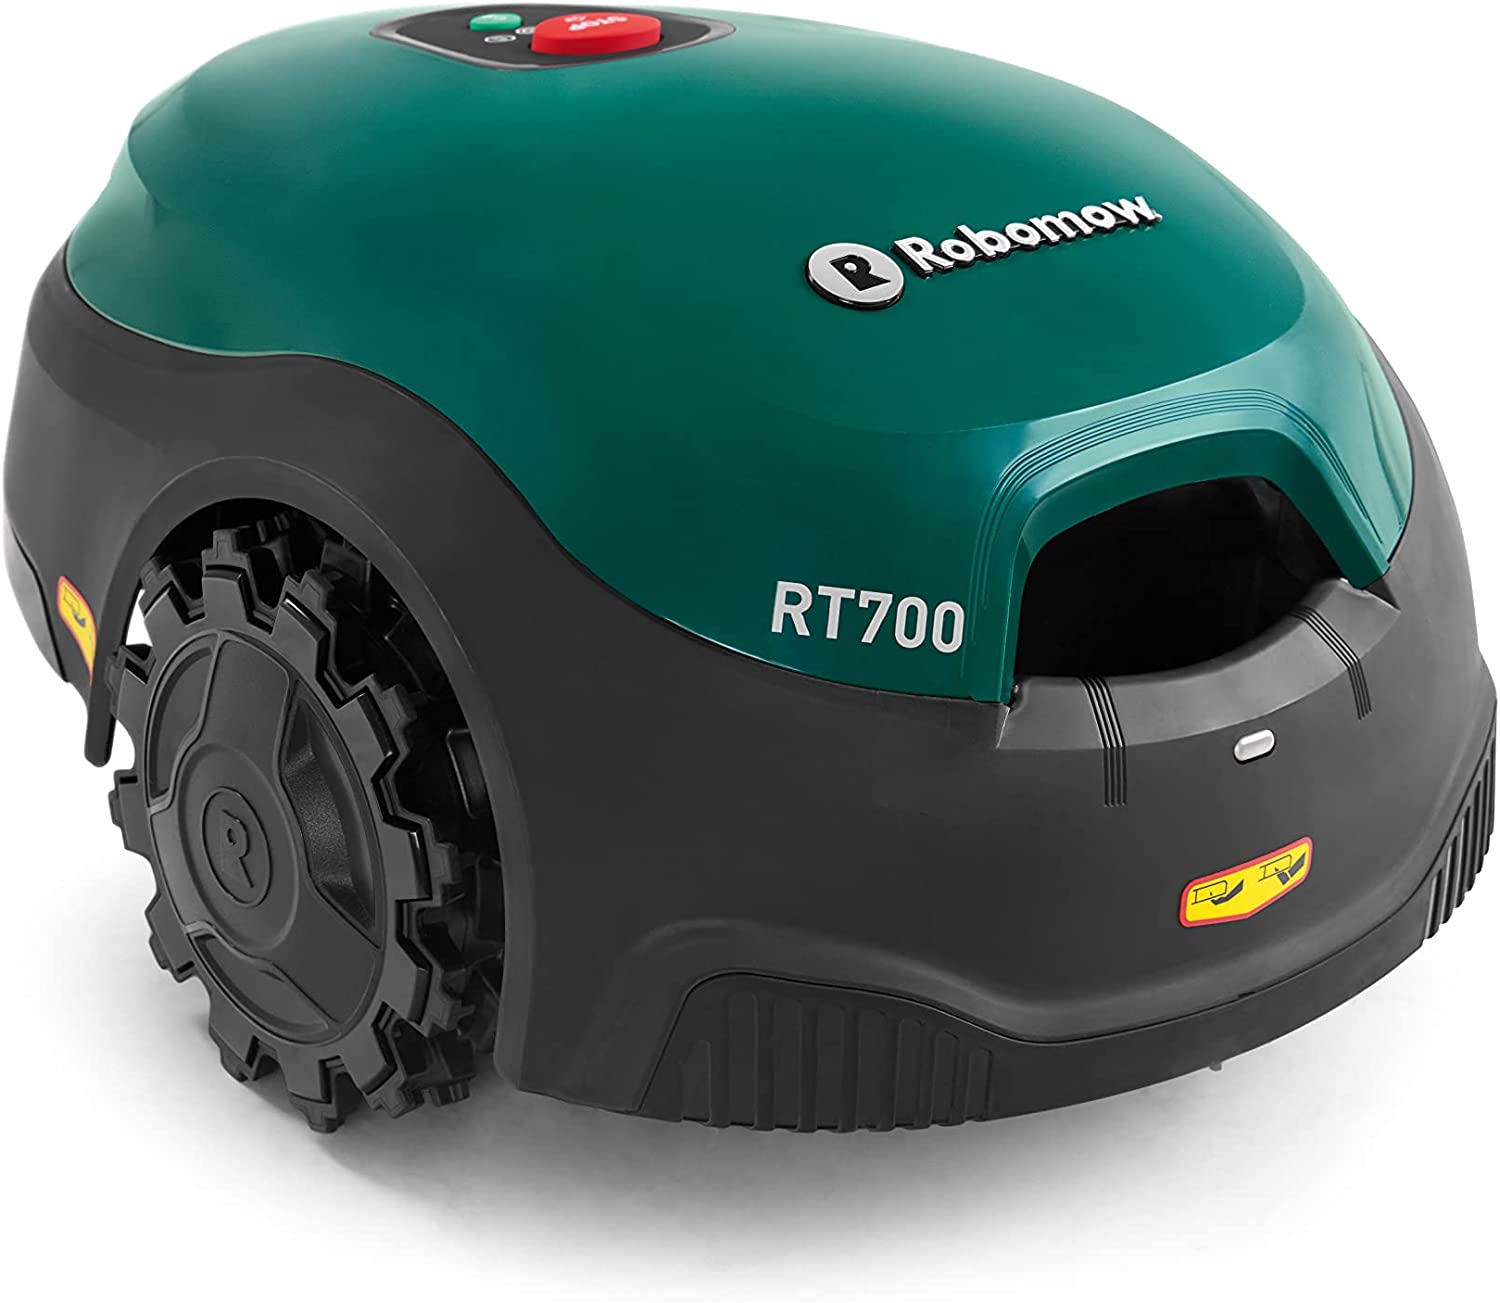 Le robot tondeuse haut de gamme Robomow RT700 est en promotion : à saisir d'urgence !